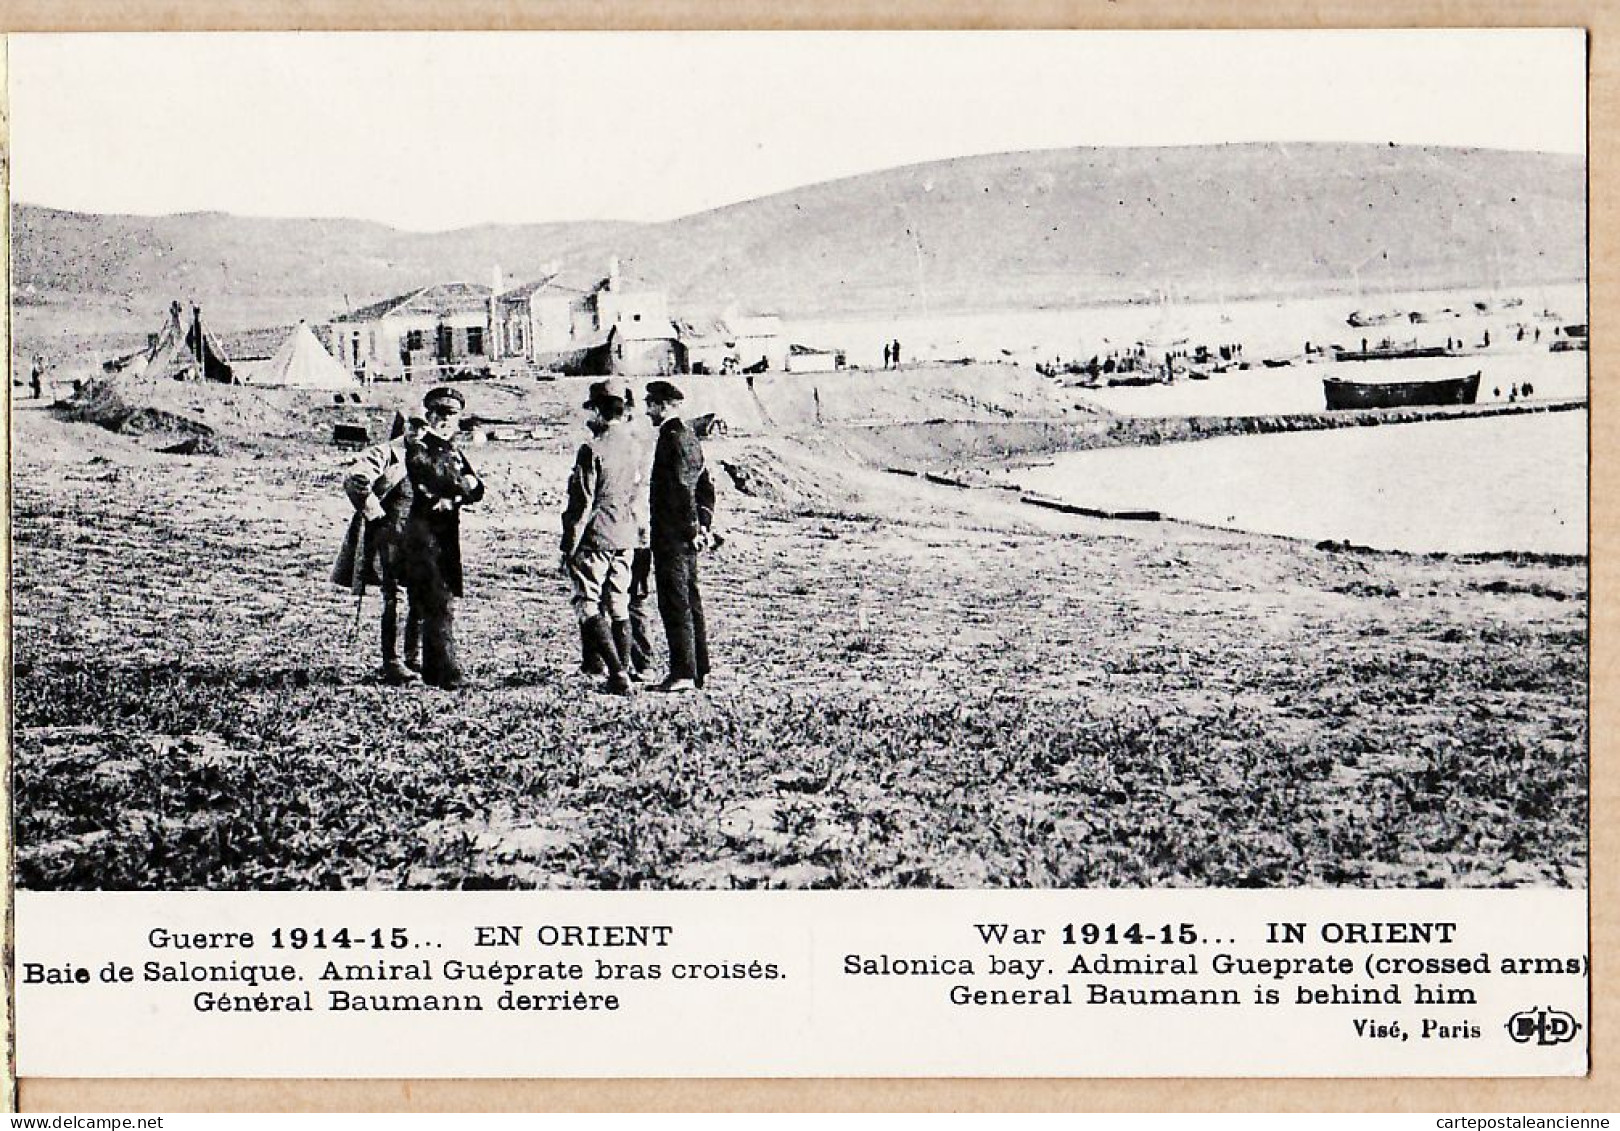 06374 / Baie De SALONIQUE SALONICA Visite Rencontre Amiral GUEPRATE Général BAUMANN CpaWW1 Guerre 1914-15 LE DELEY - Grèce